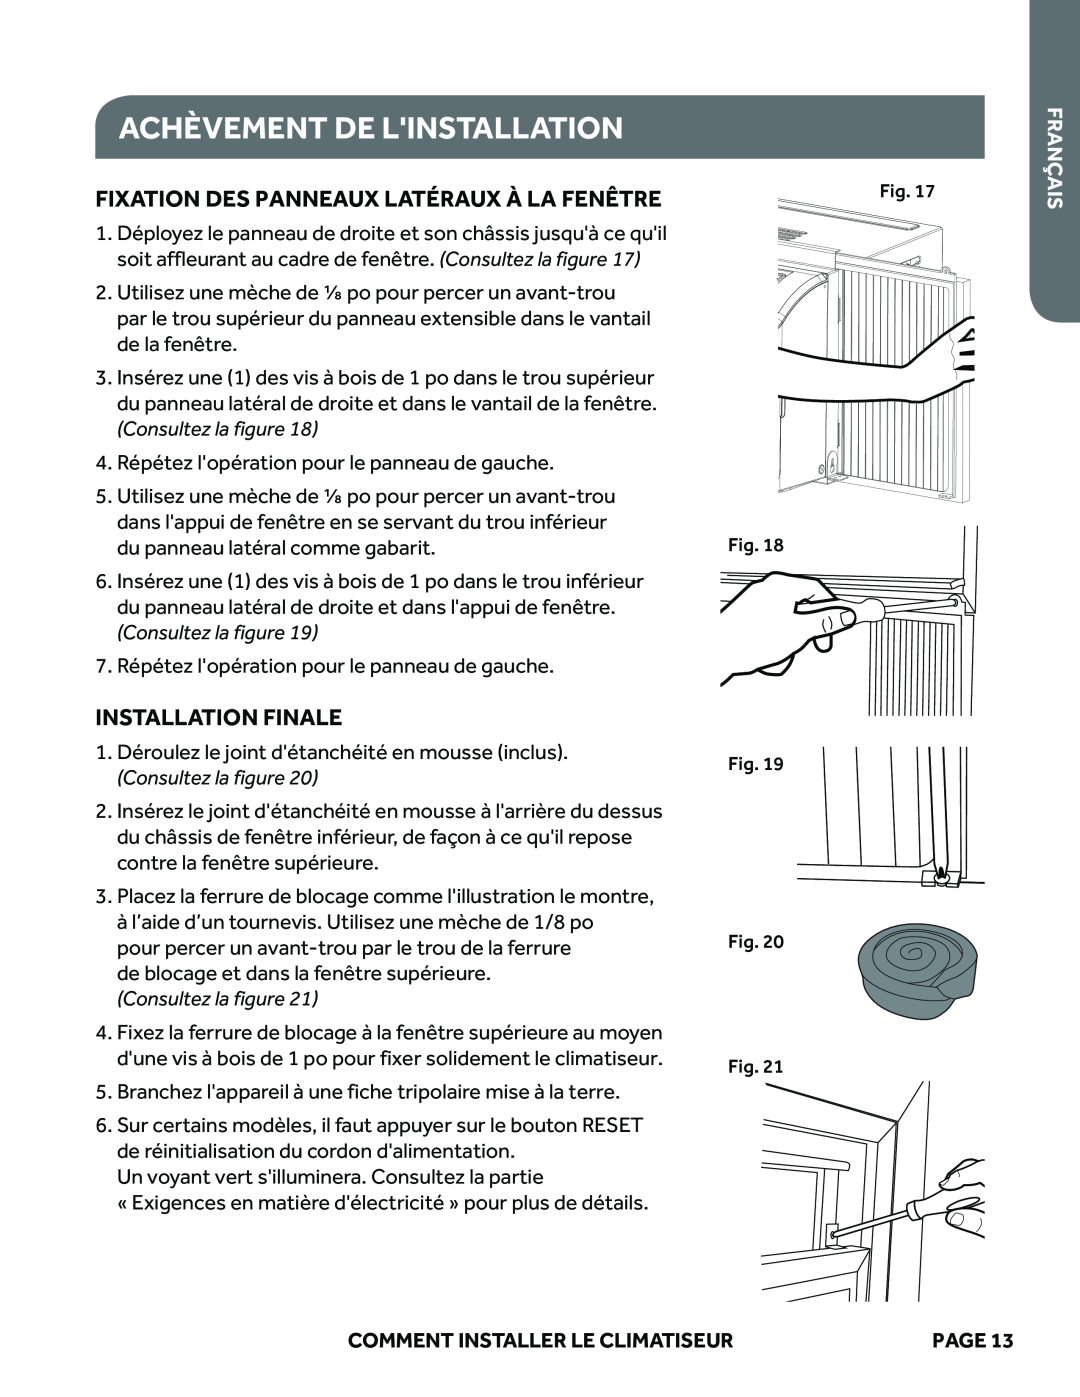 Haier ESAQ406P Achèvement De Linstallation, Fixation Des Panneaux Latéraux À La Fenêtre, Installation Finale, Français 